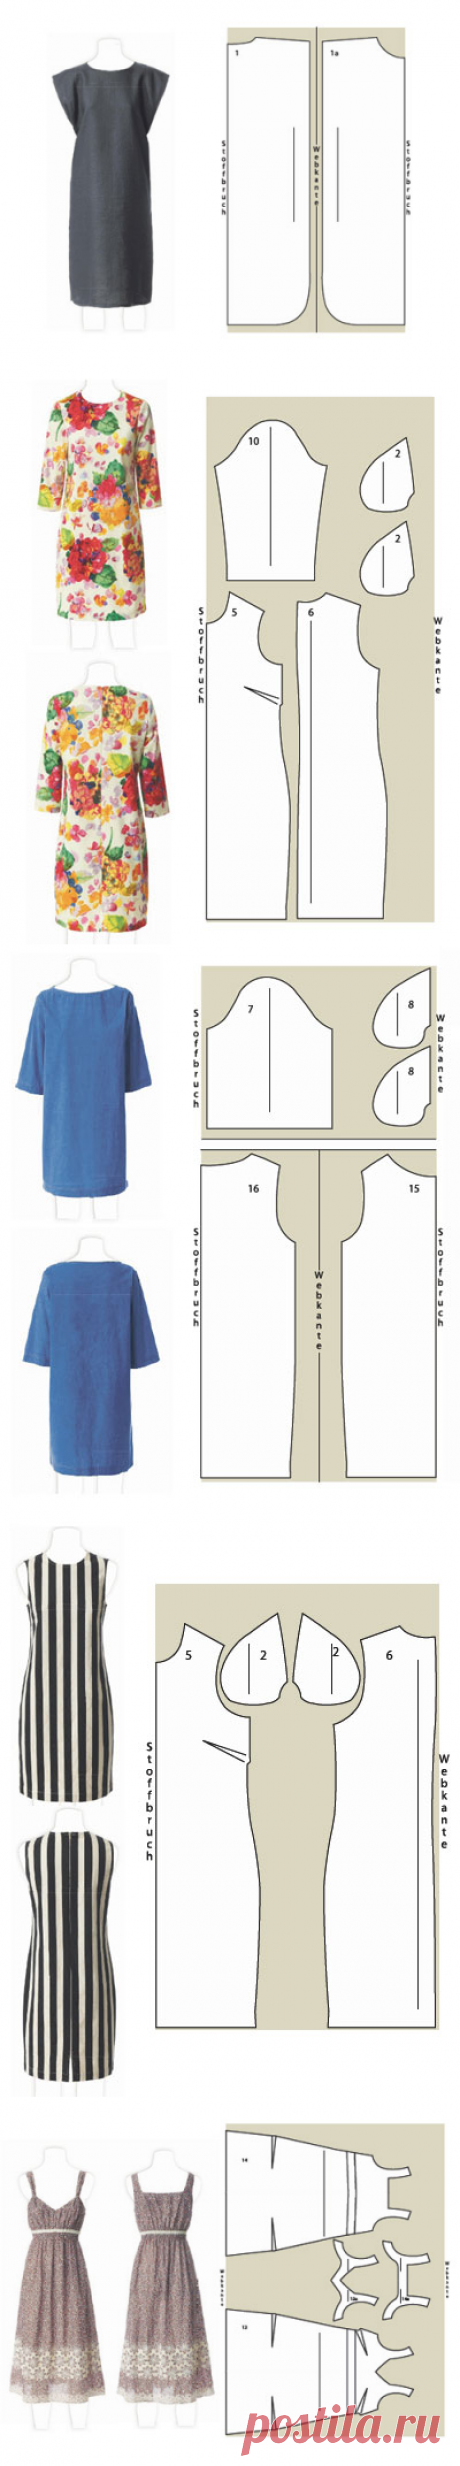 Шикарные платья шить себе - для начинающих. Восемь моделей - образцы и инструкции.